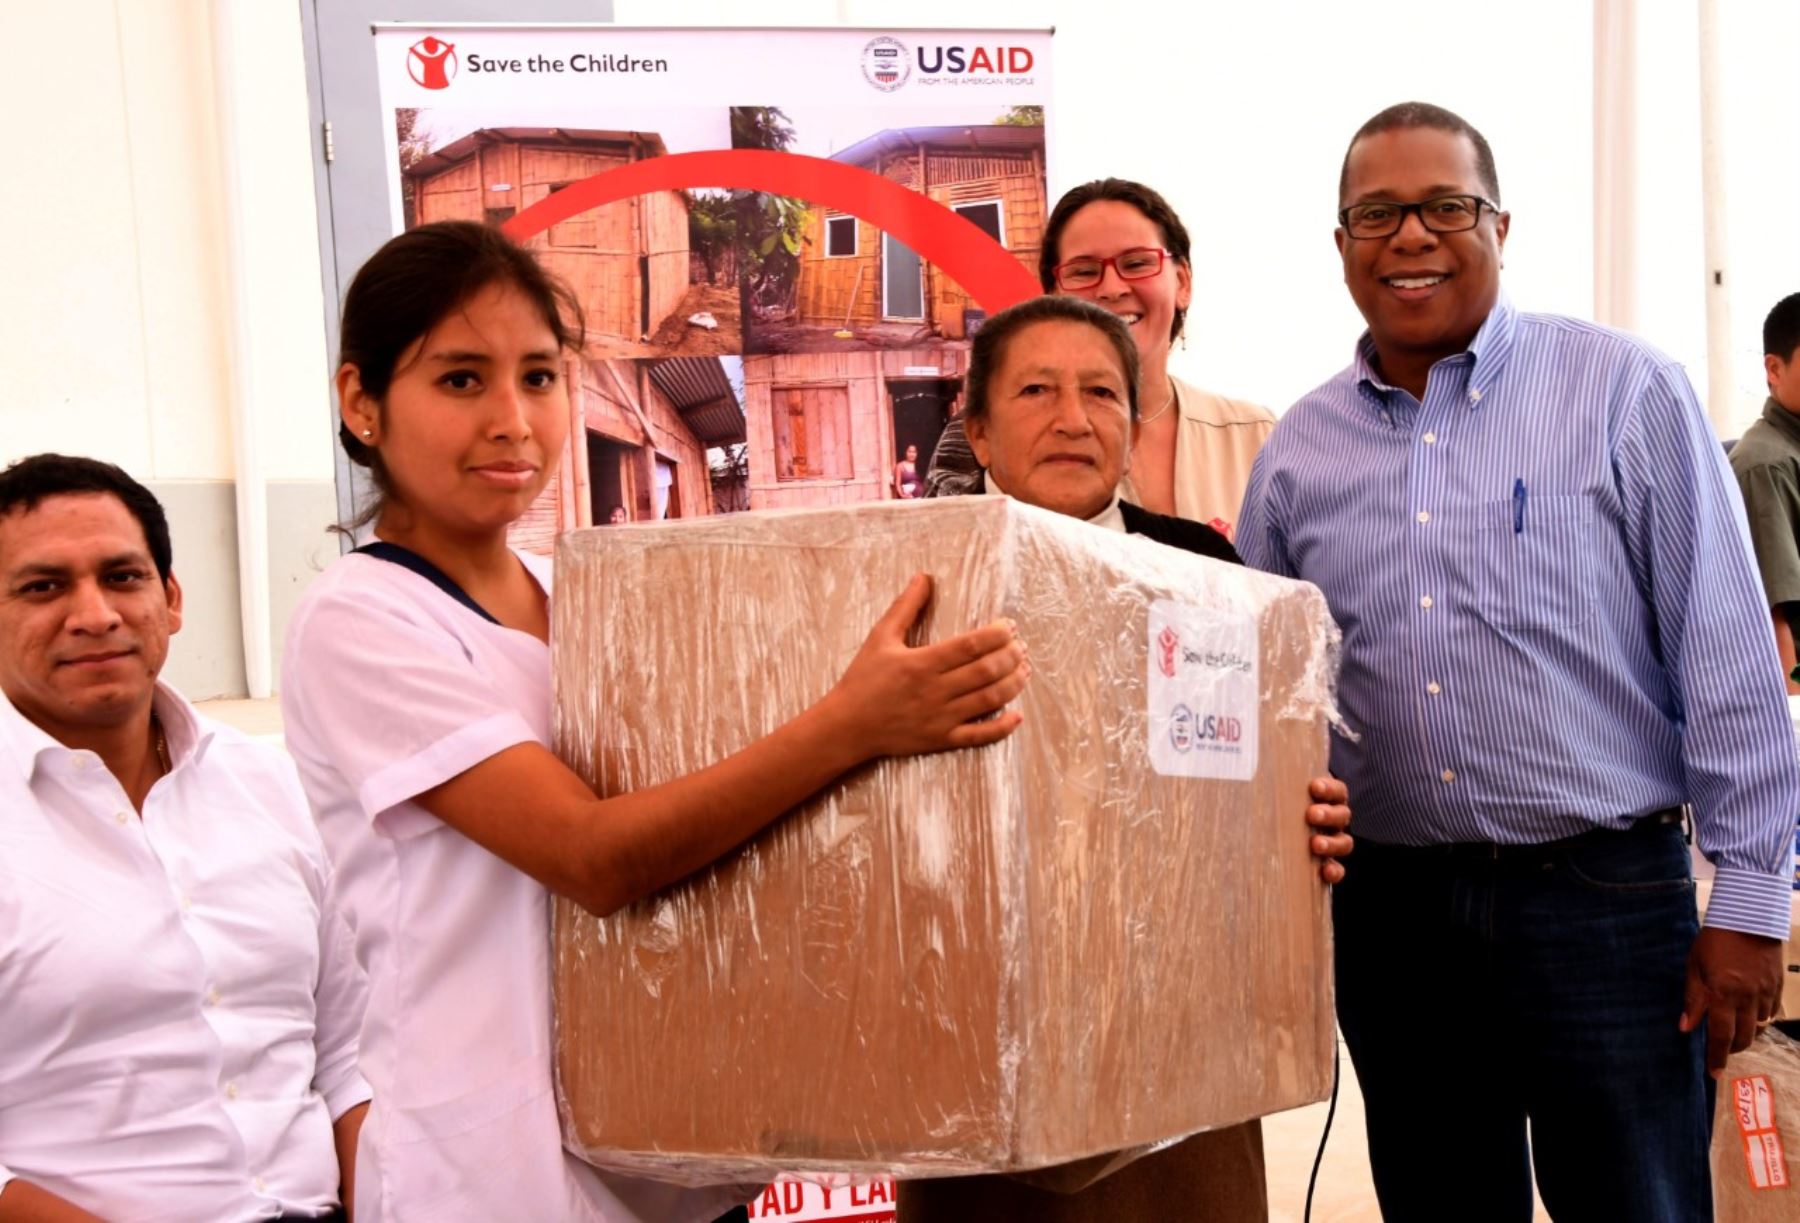 U.S. Ambassador Brian Nichols delivers aid in Peru